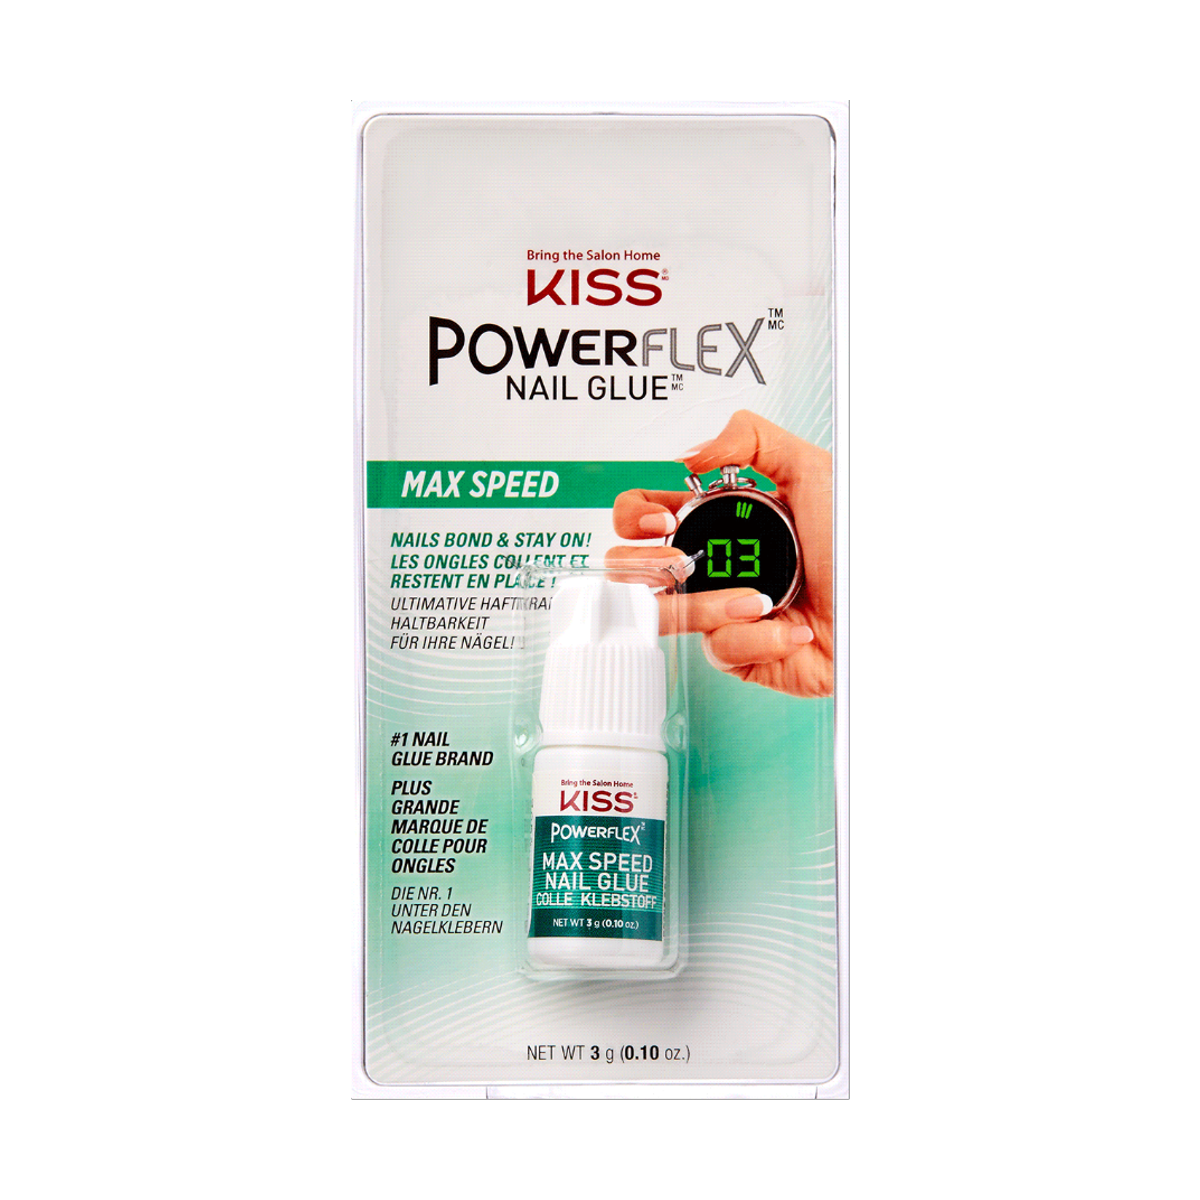 Kiss PowerFlex Nail Glue Maximum Speed